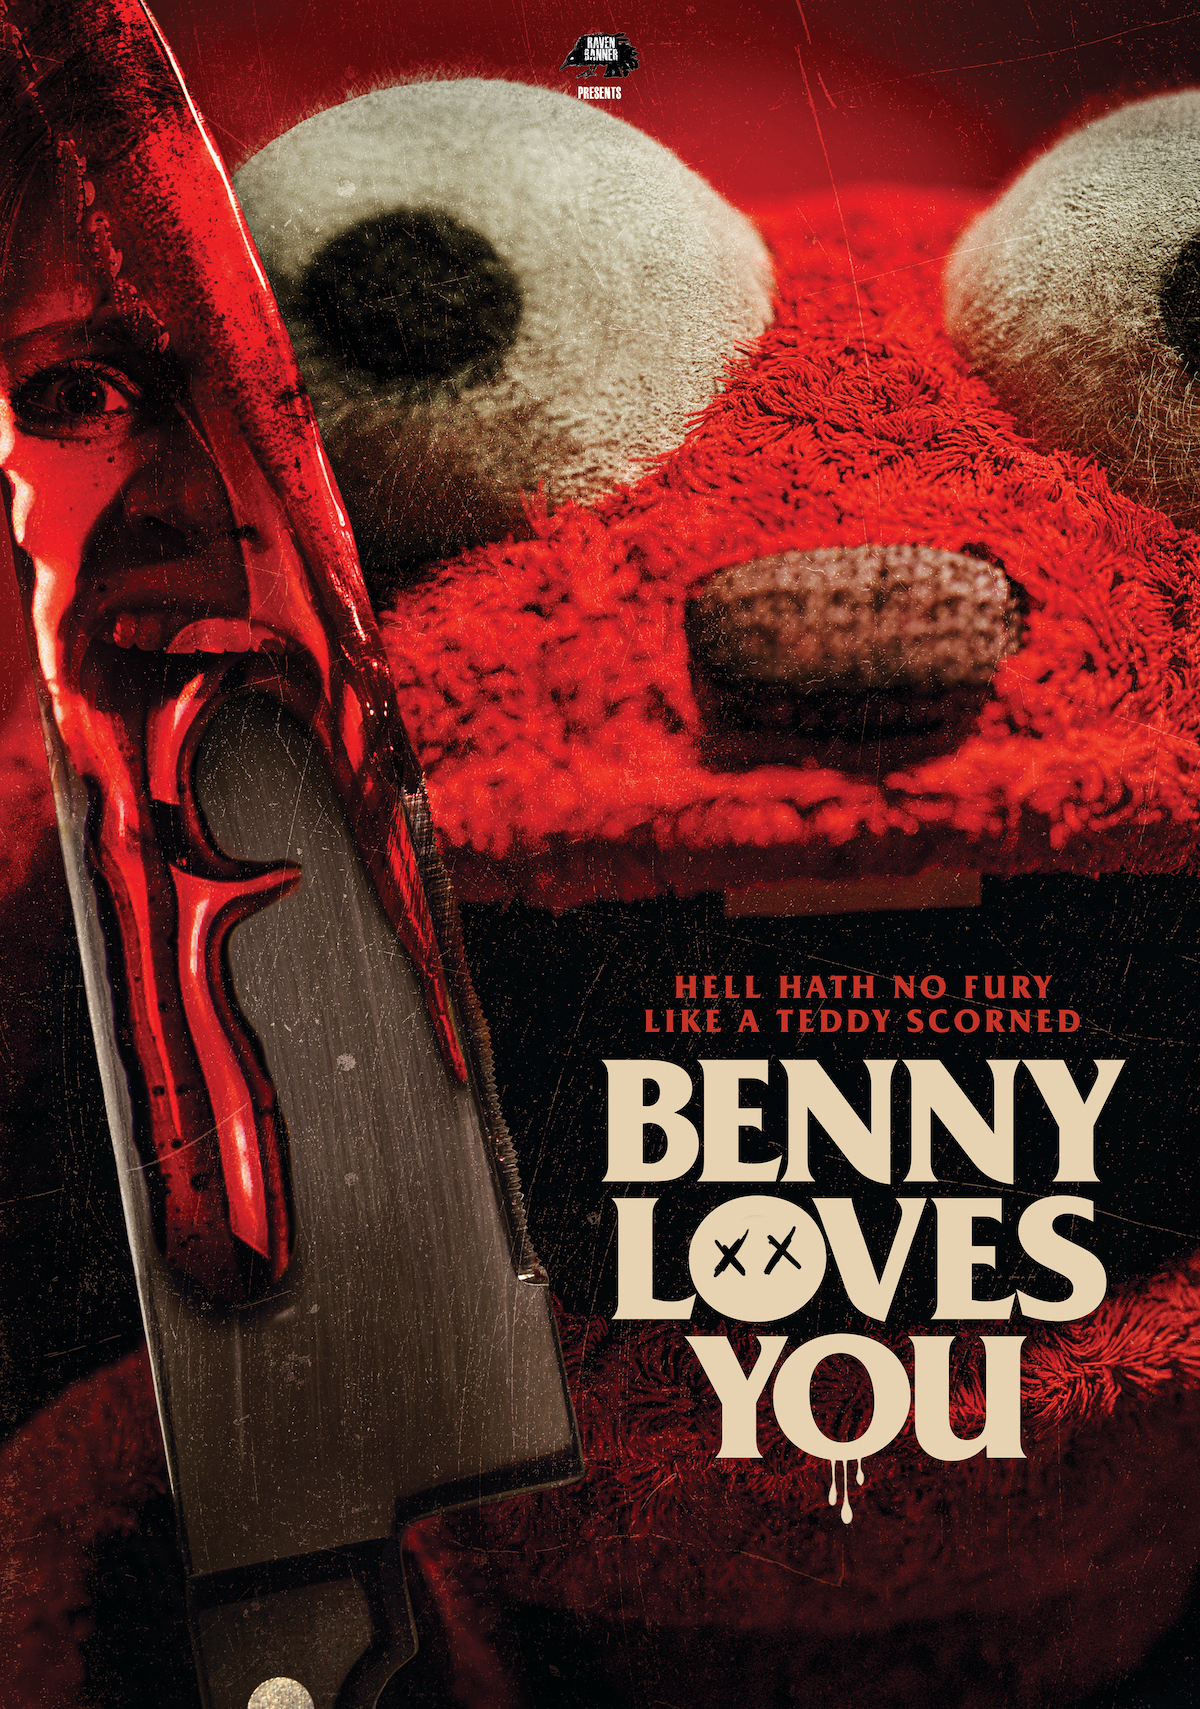 Benny Loves You (2019)